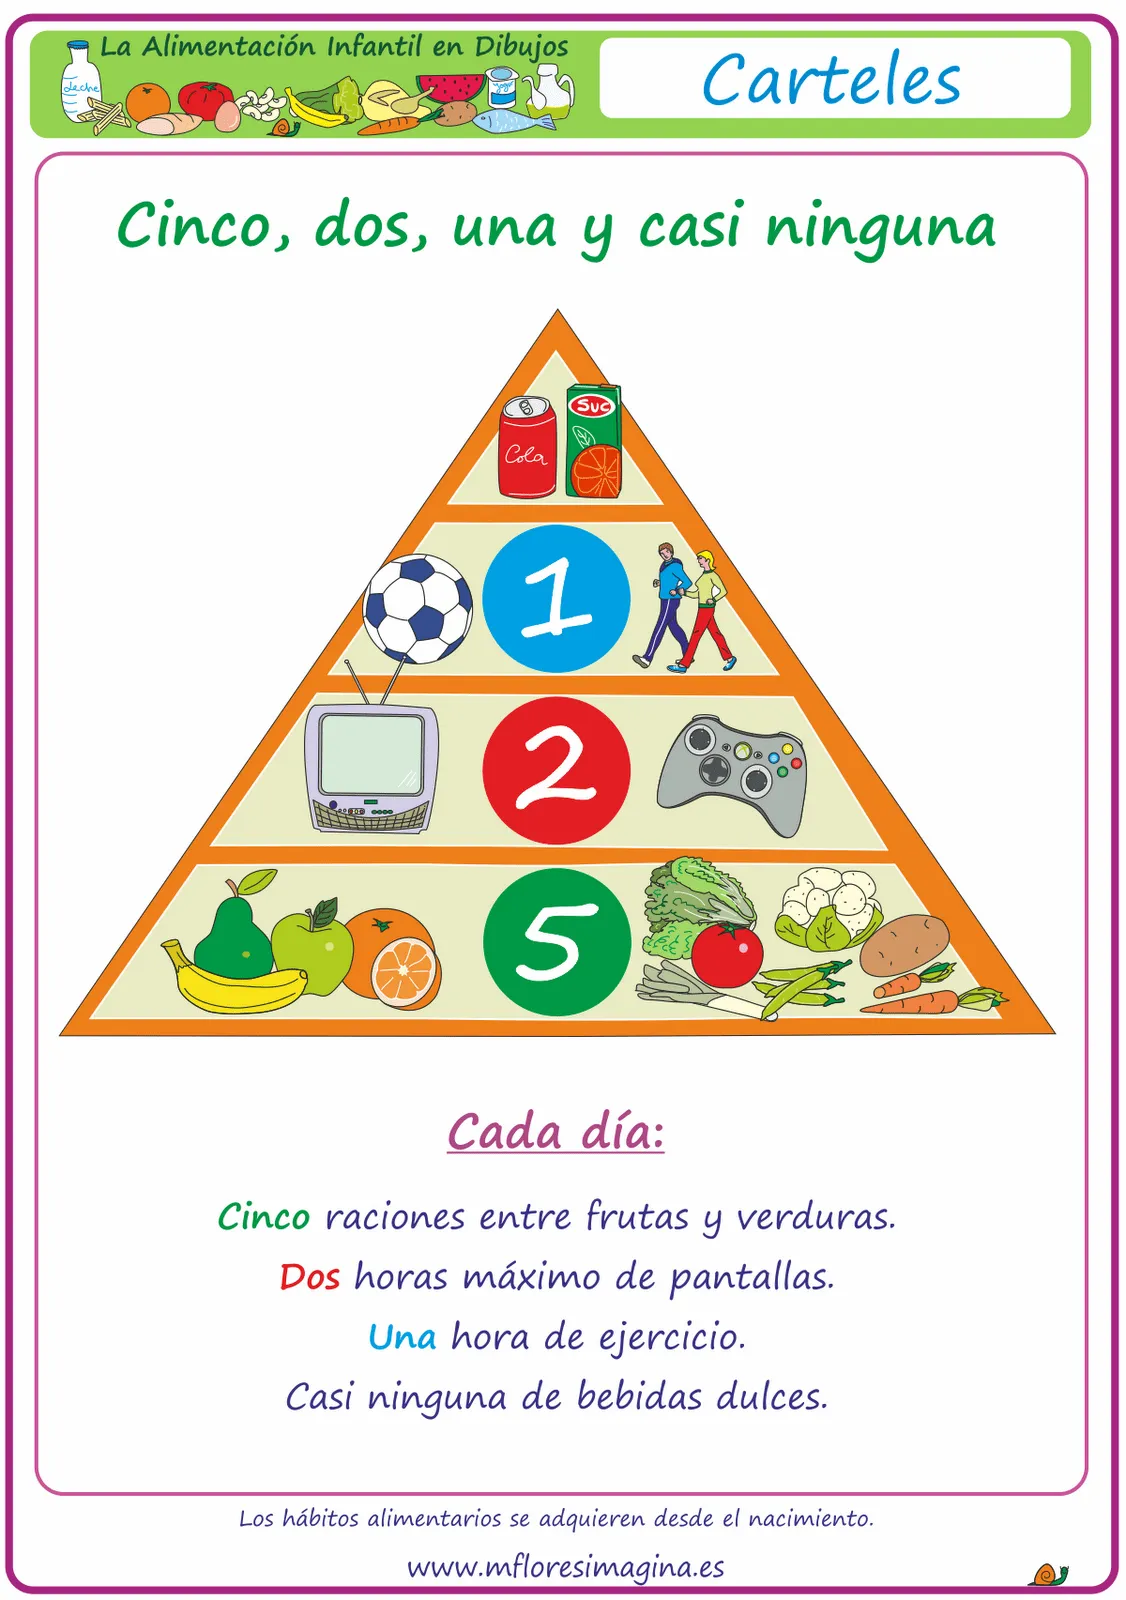 La alimentación infantil en dibujos: Prevenir la obesidad